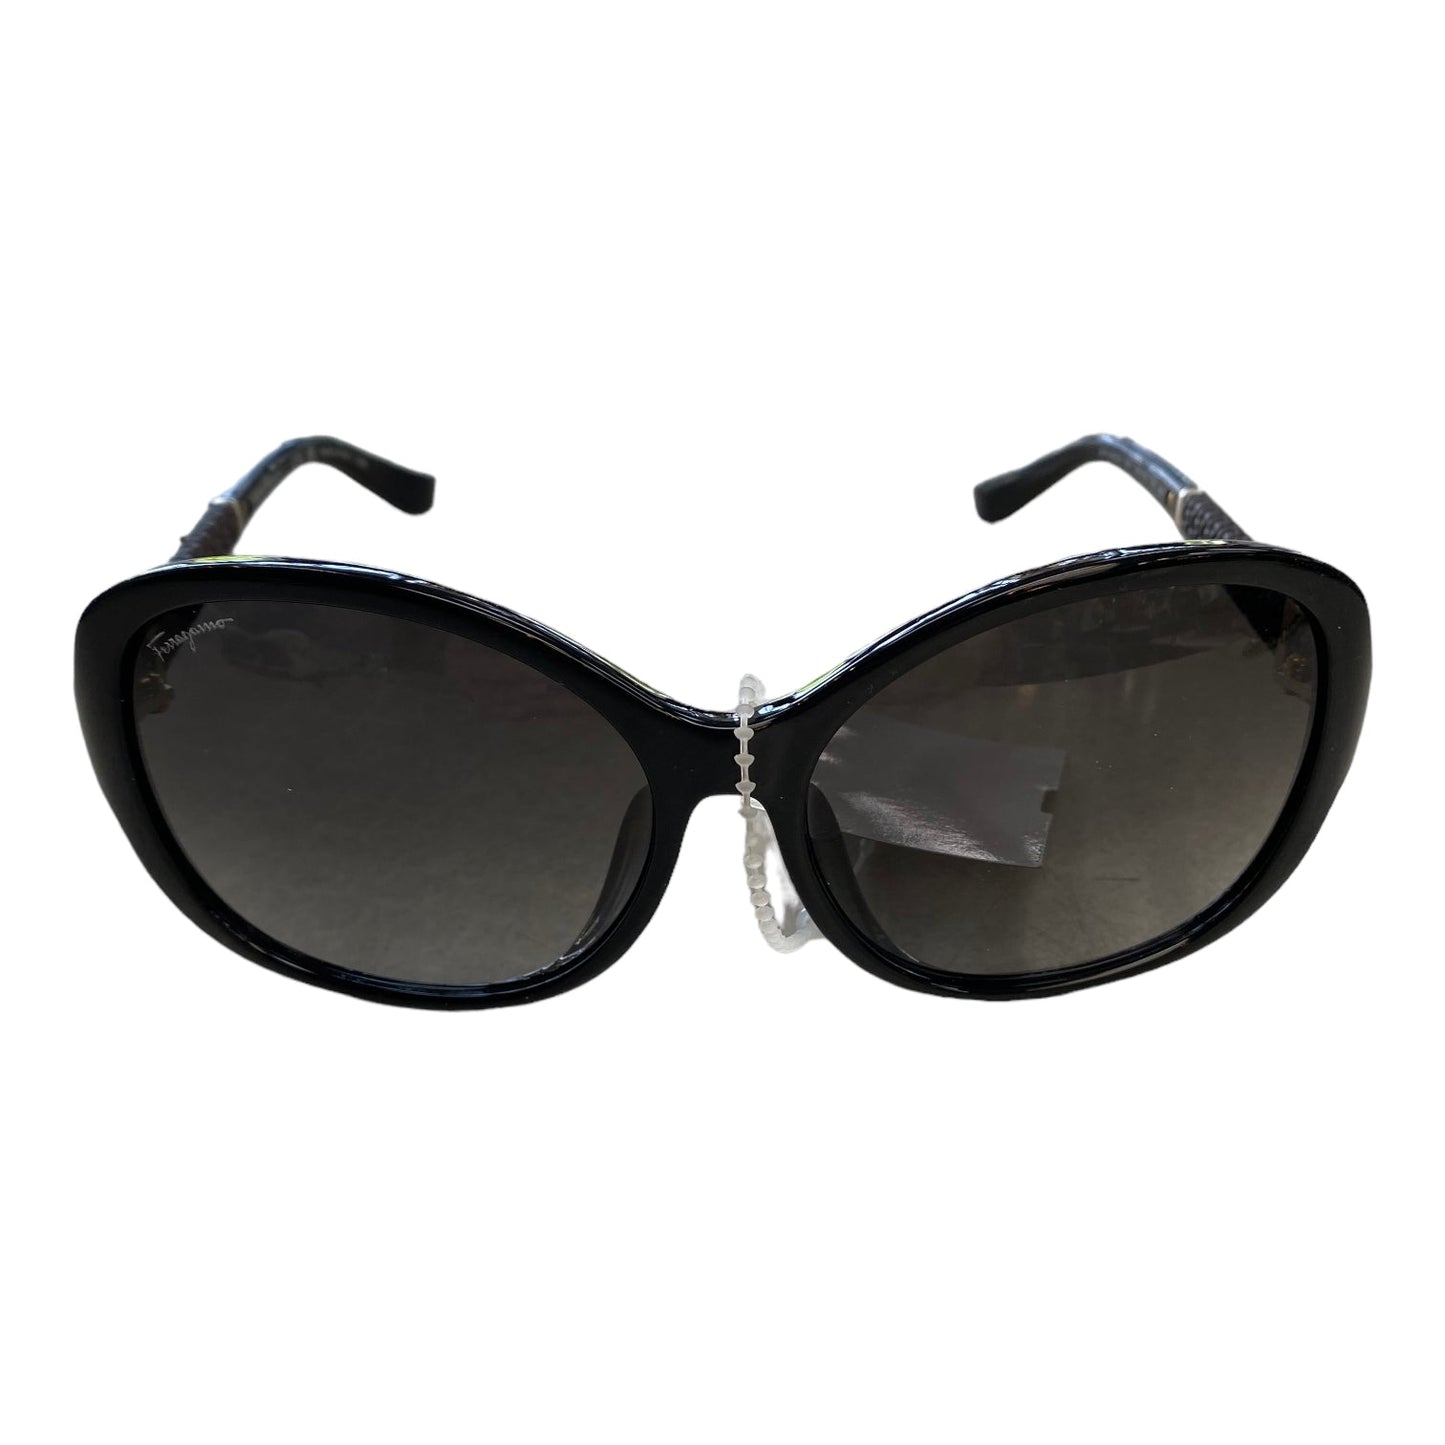 Sunglasses Designer Ferragamo